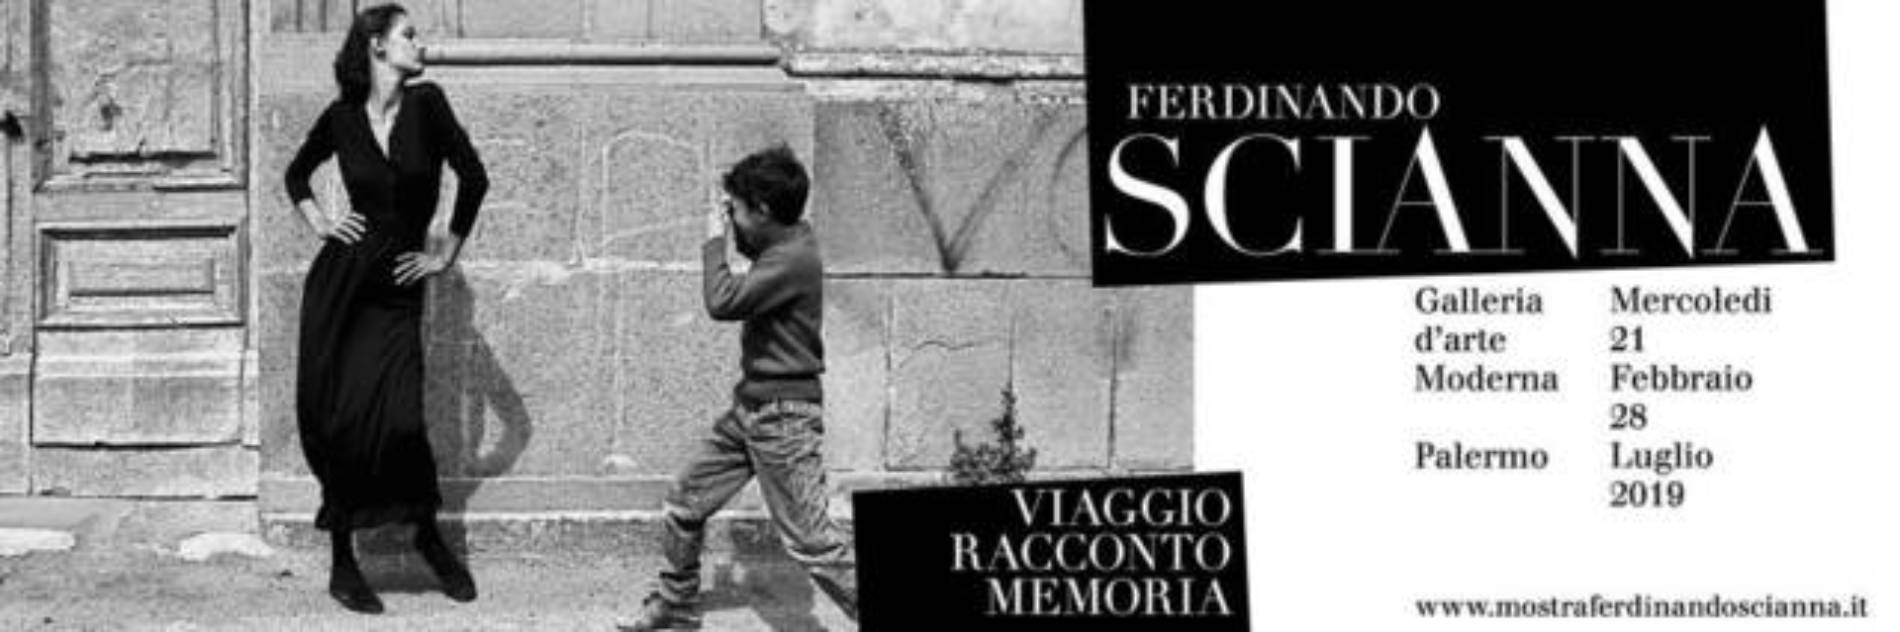 “Viaggio, racconto, memoria”- in mostra le foto di Ferdinando Scianna